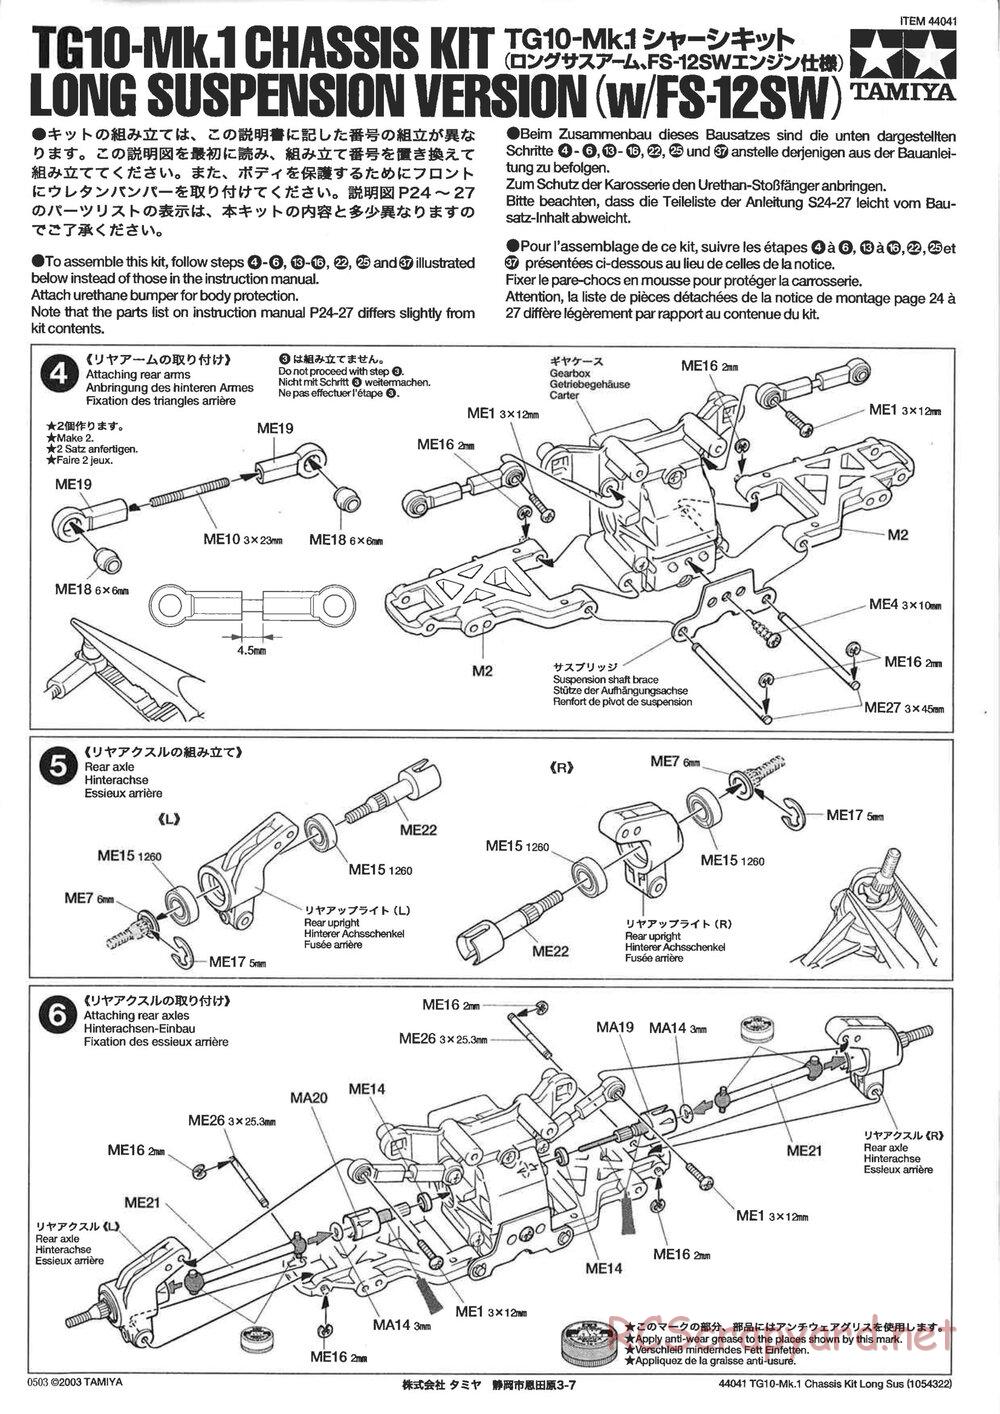 Tamiya - TG10 Mk.1 Long Suspension Chassis Chassis - Manual - Page 1